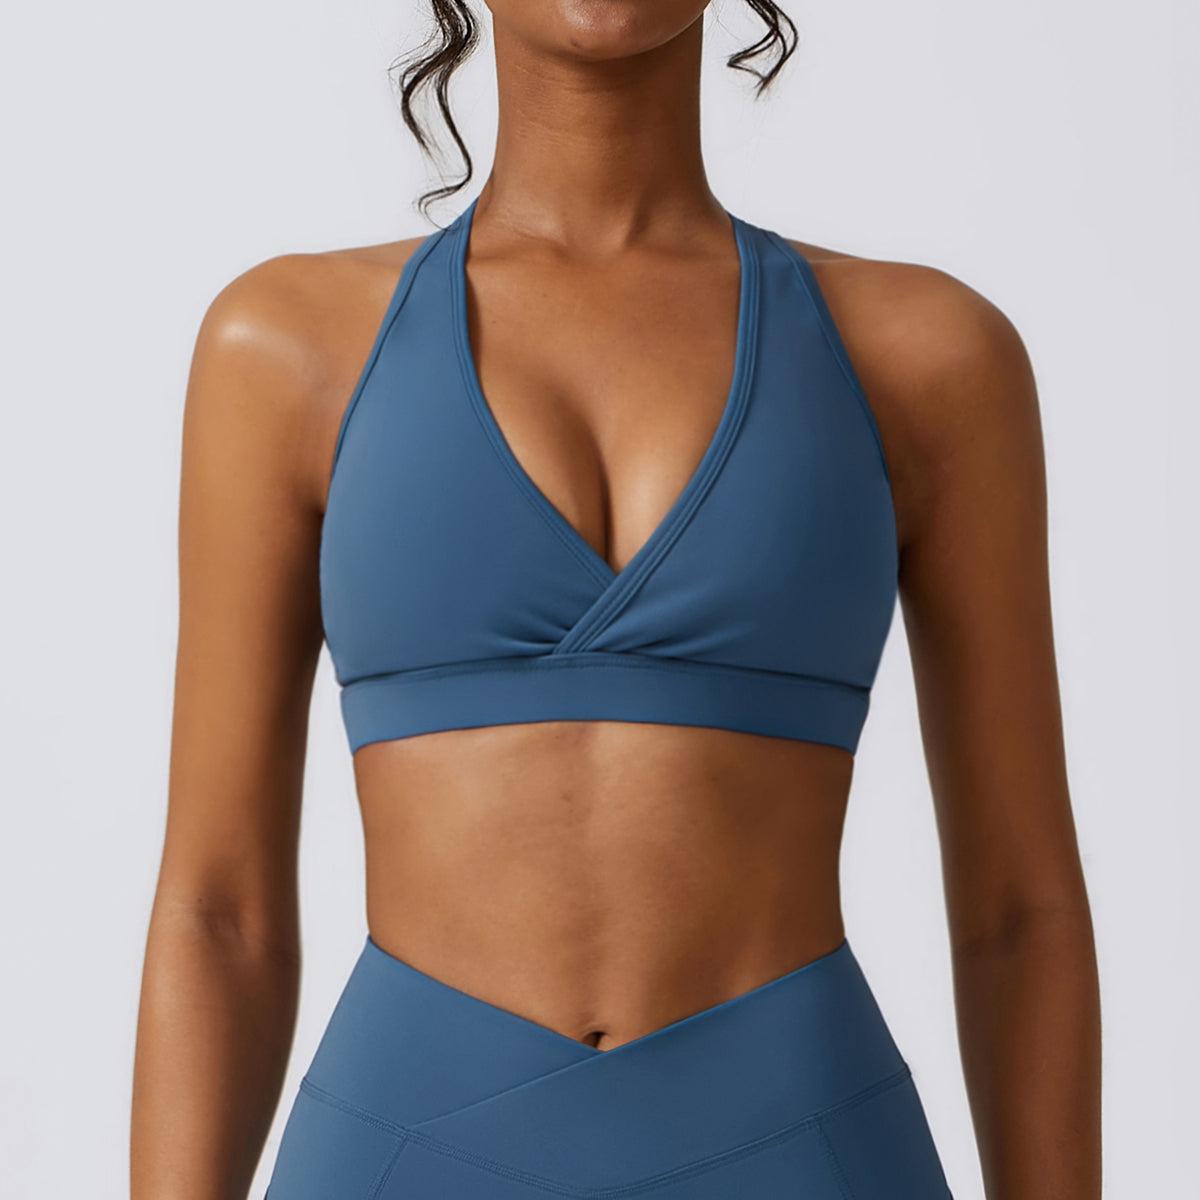 a woman in a blue sports bra top